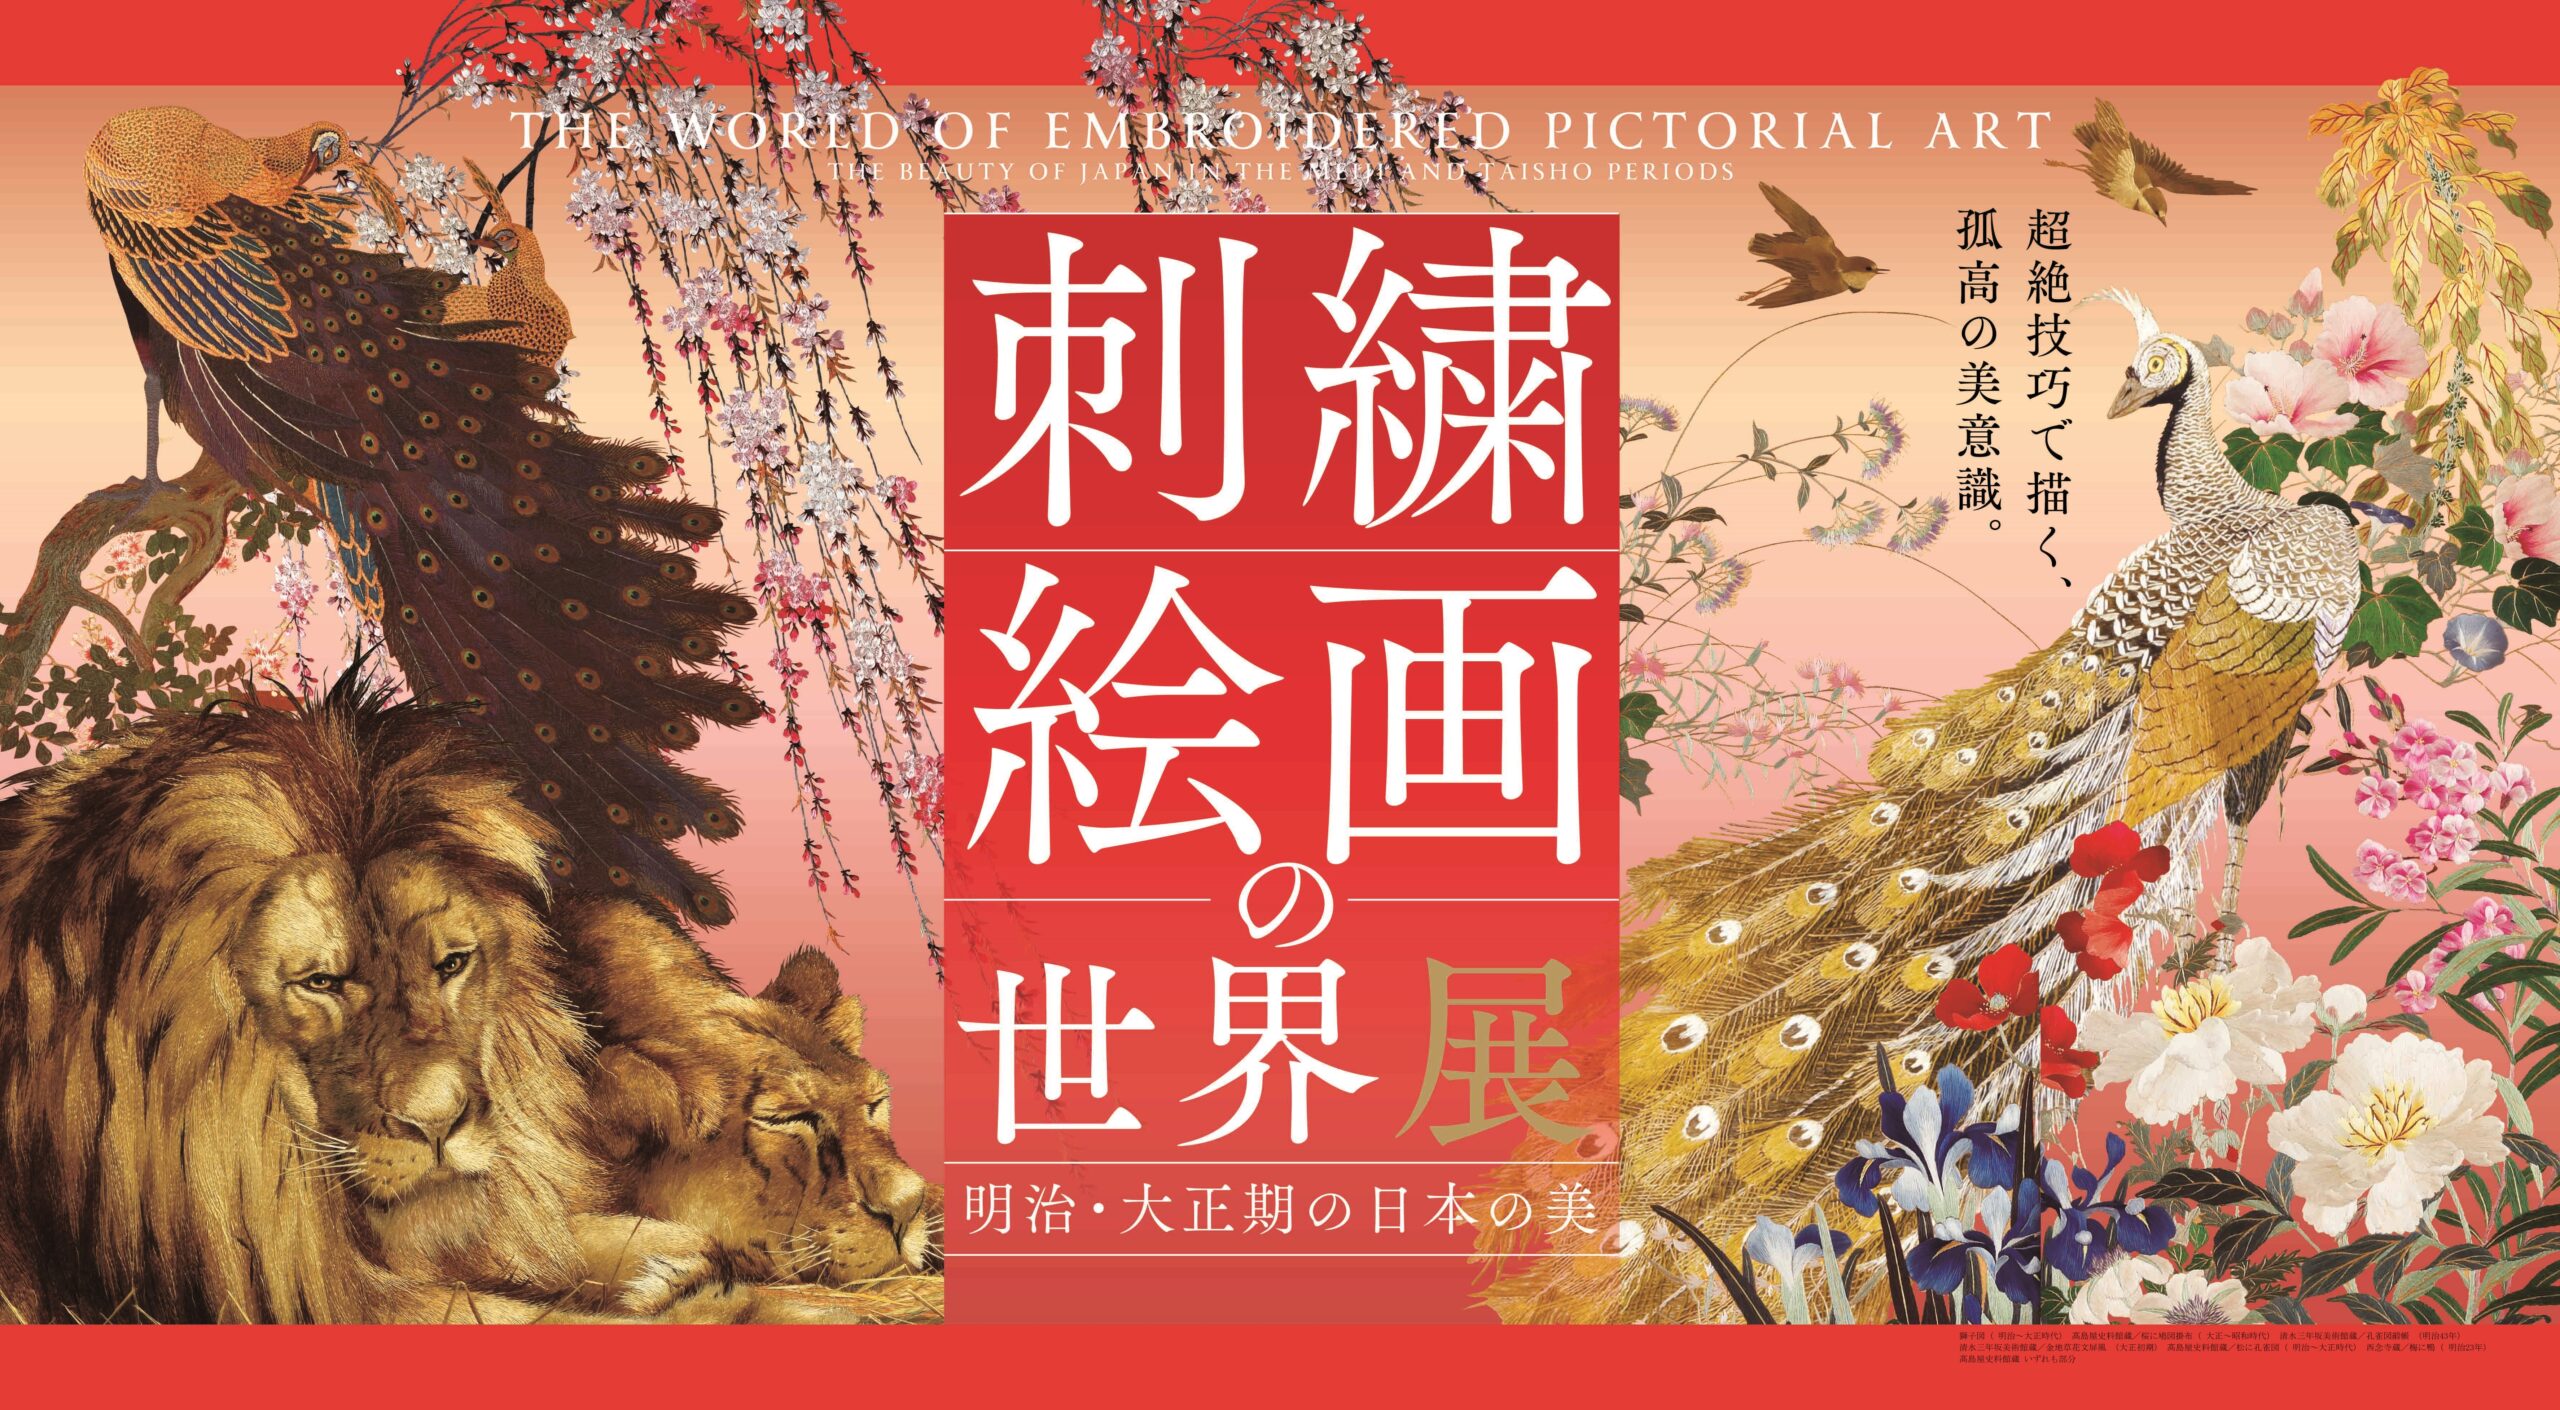 刺繍絵画の世界展 ‐明治・大正期の日本の美‐